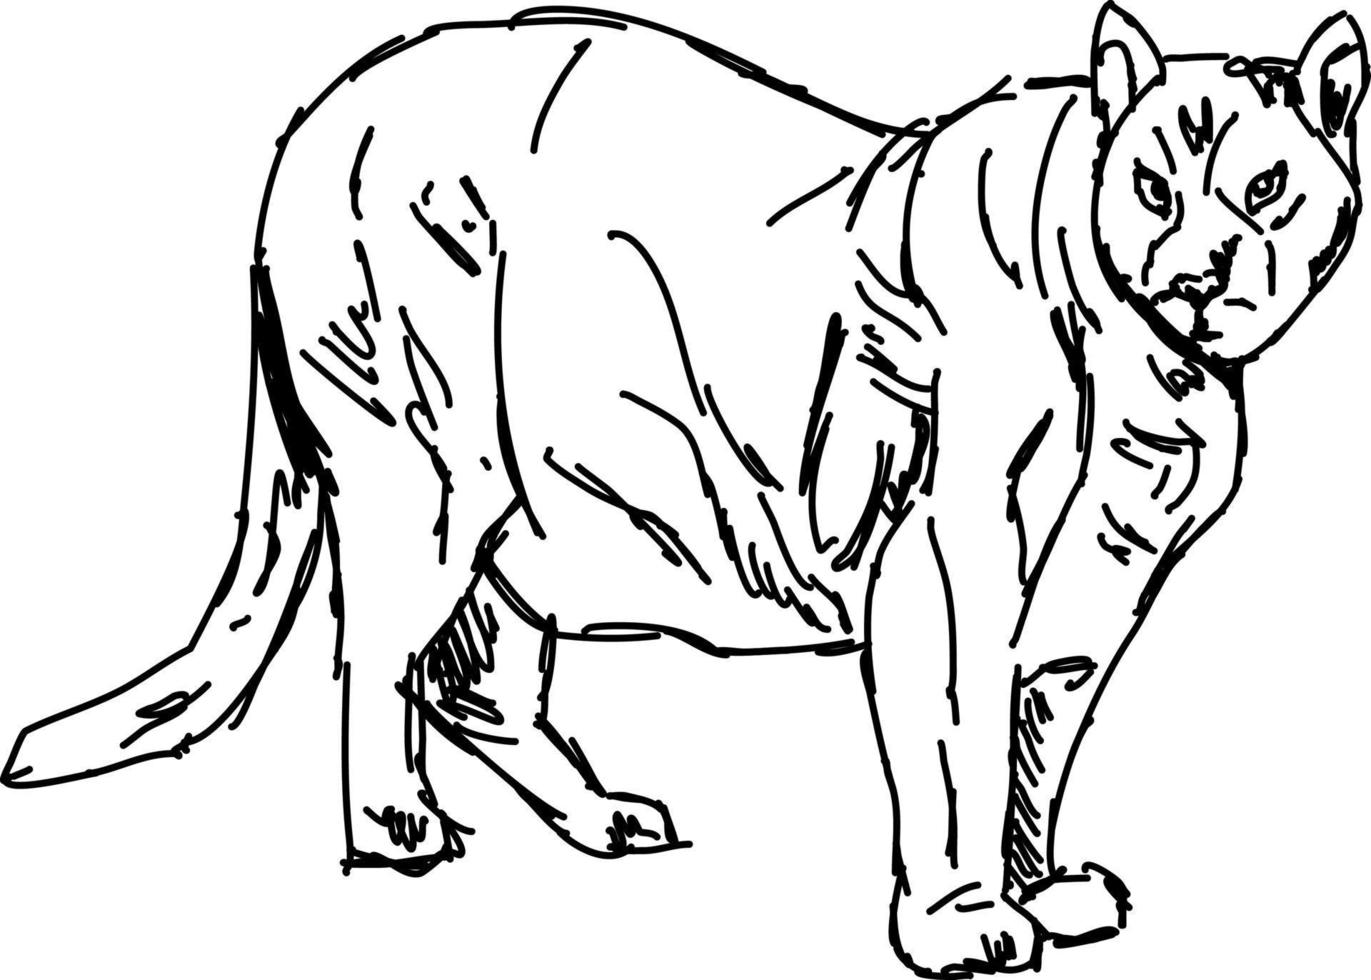 Dibujo de puma, ilustración, vector sobre fondo blanco.